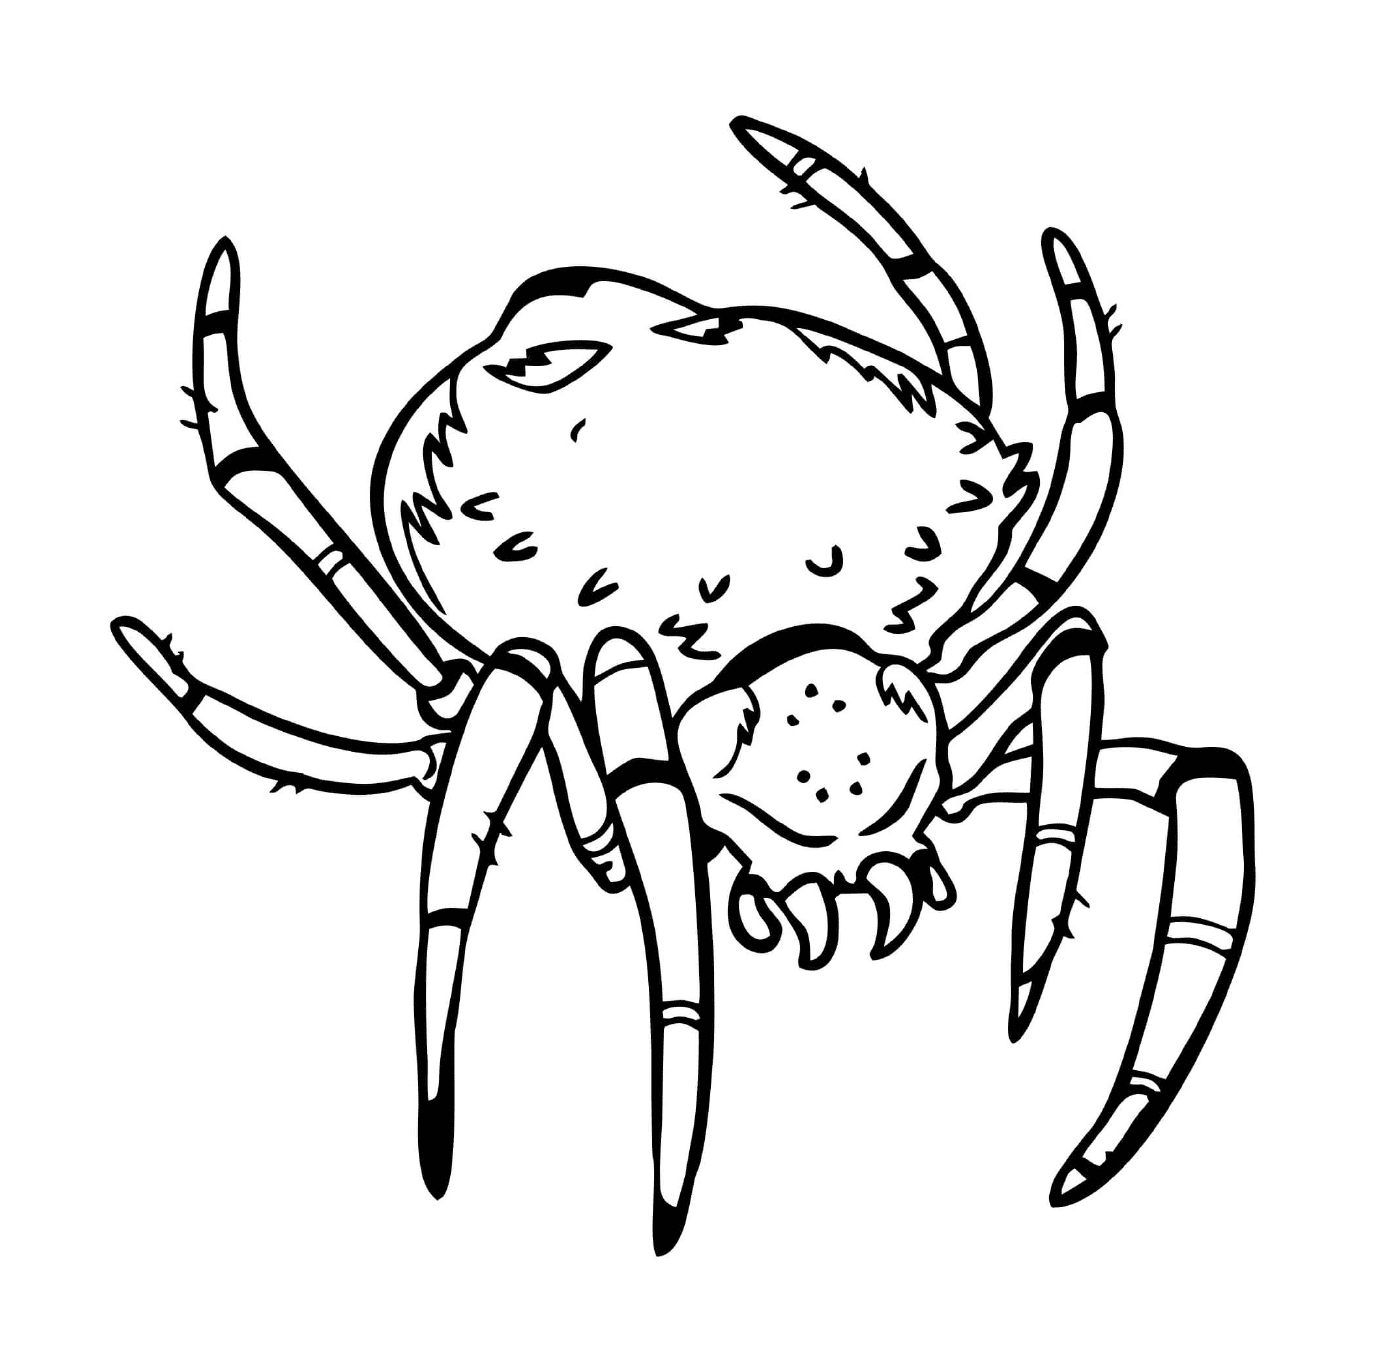  Eine unheimliche Spinne mit einem großen Körper 